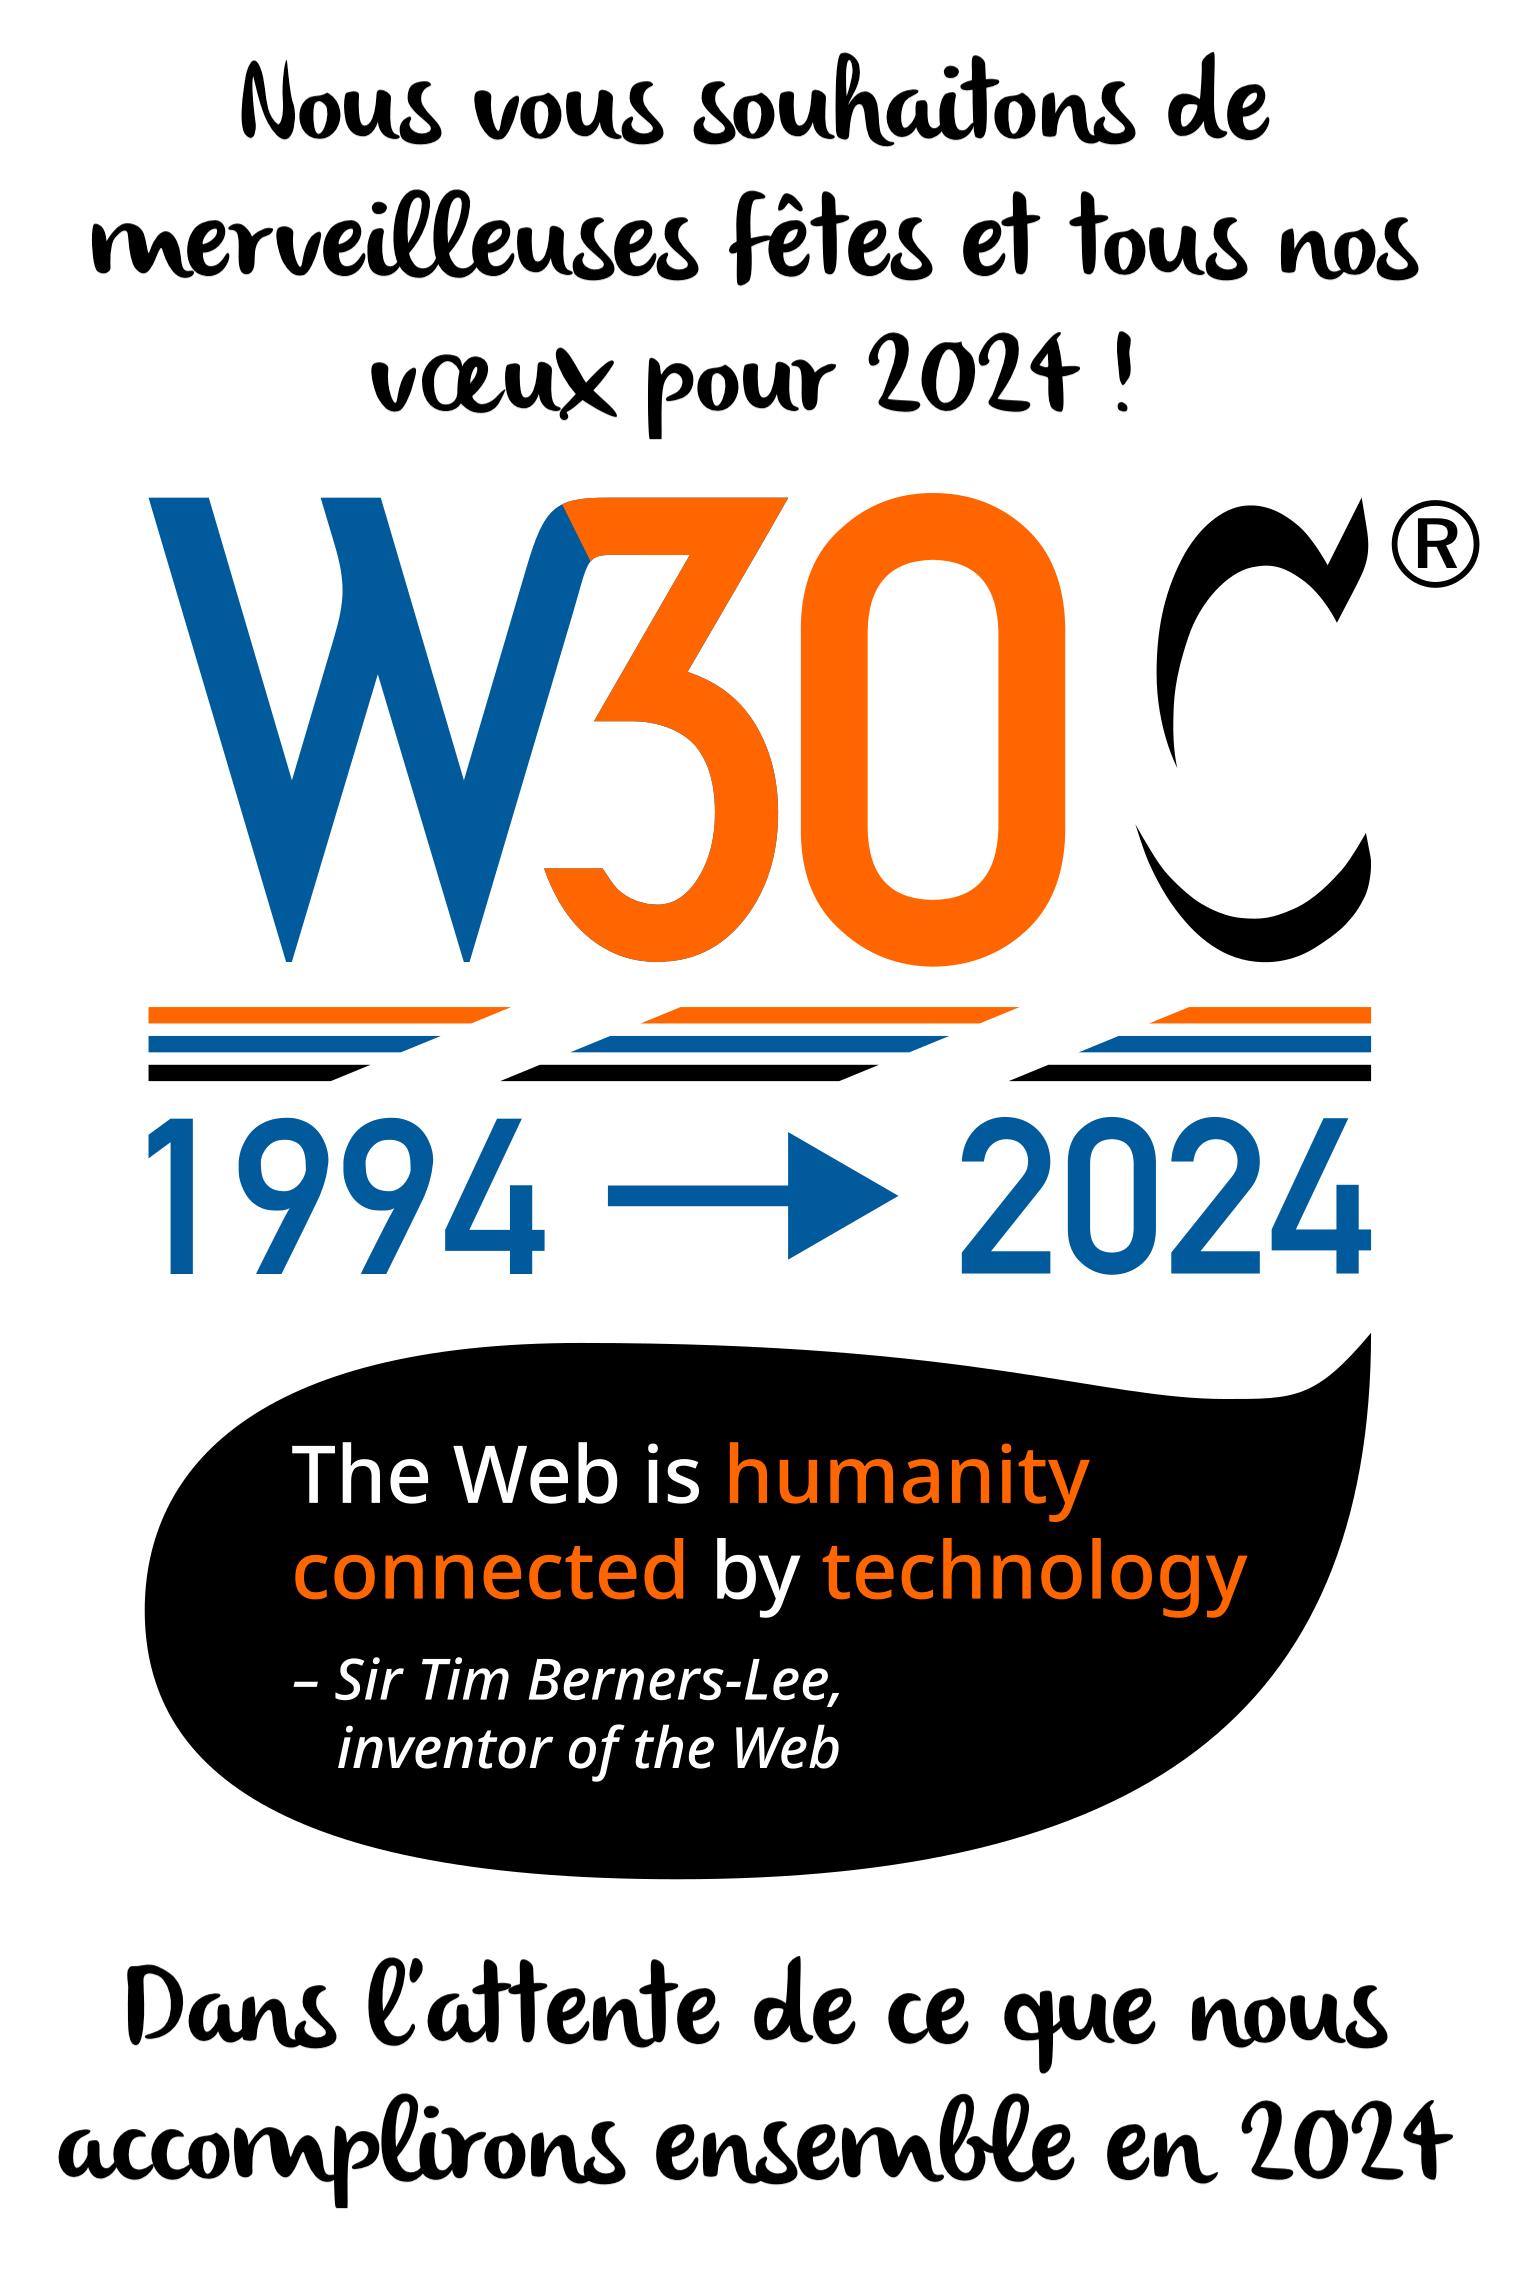 Logo W3C transformé en W30C (1994-2024), Tim Berners-Lee citant « le web est l'humanité connectée par la technologie », vœux.